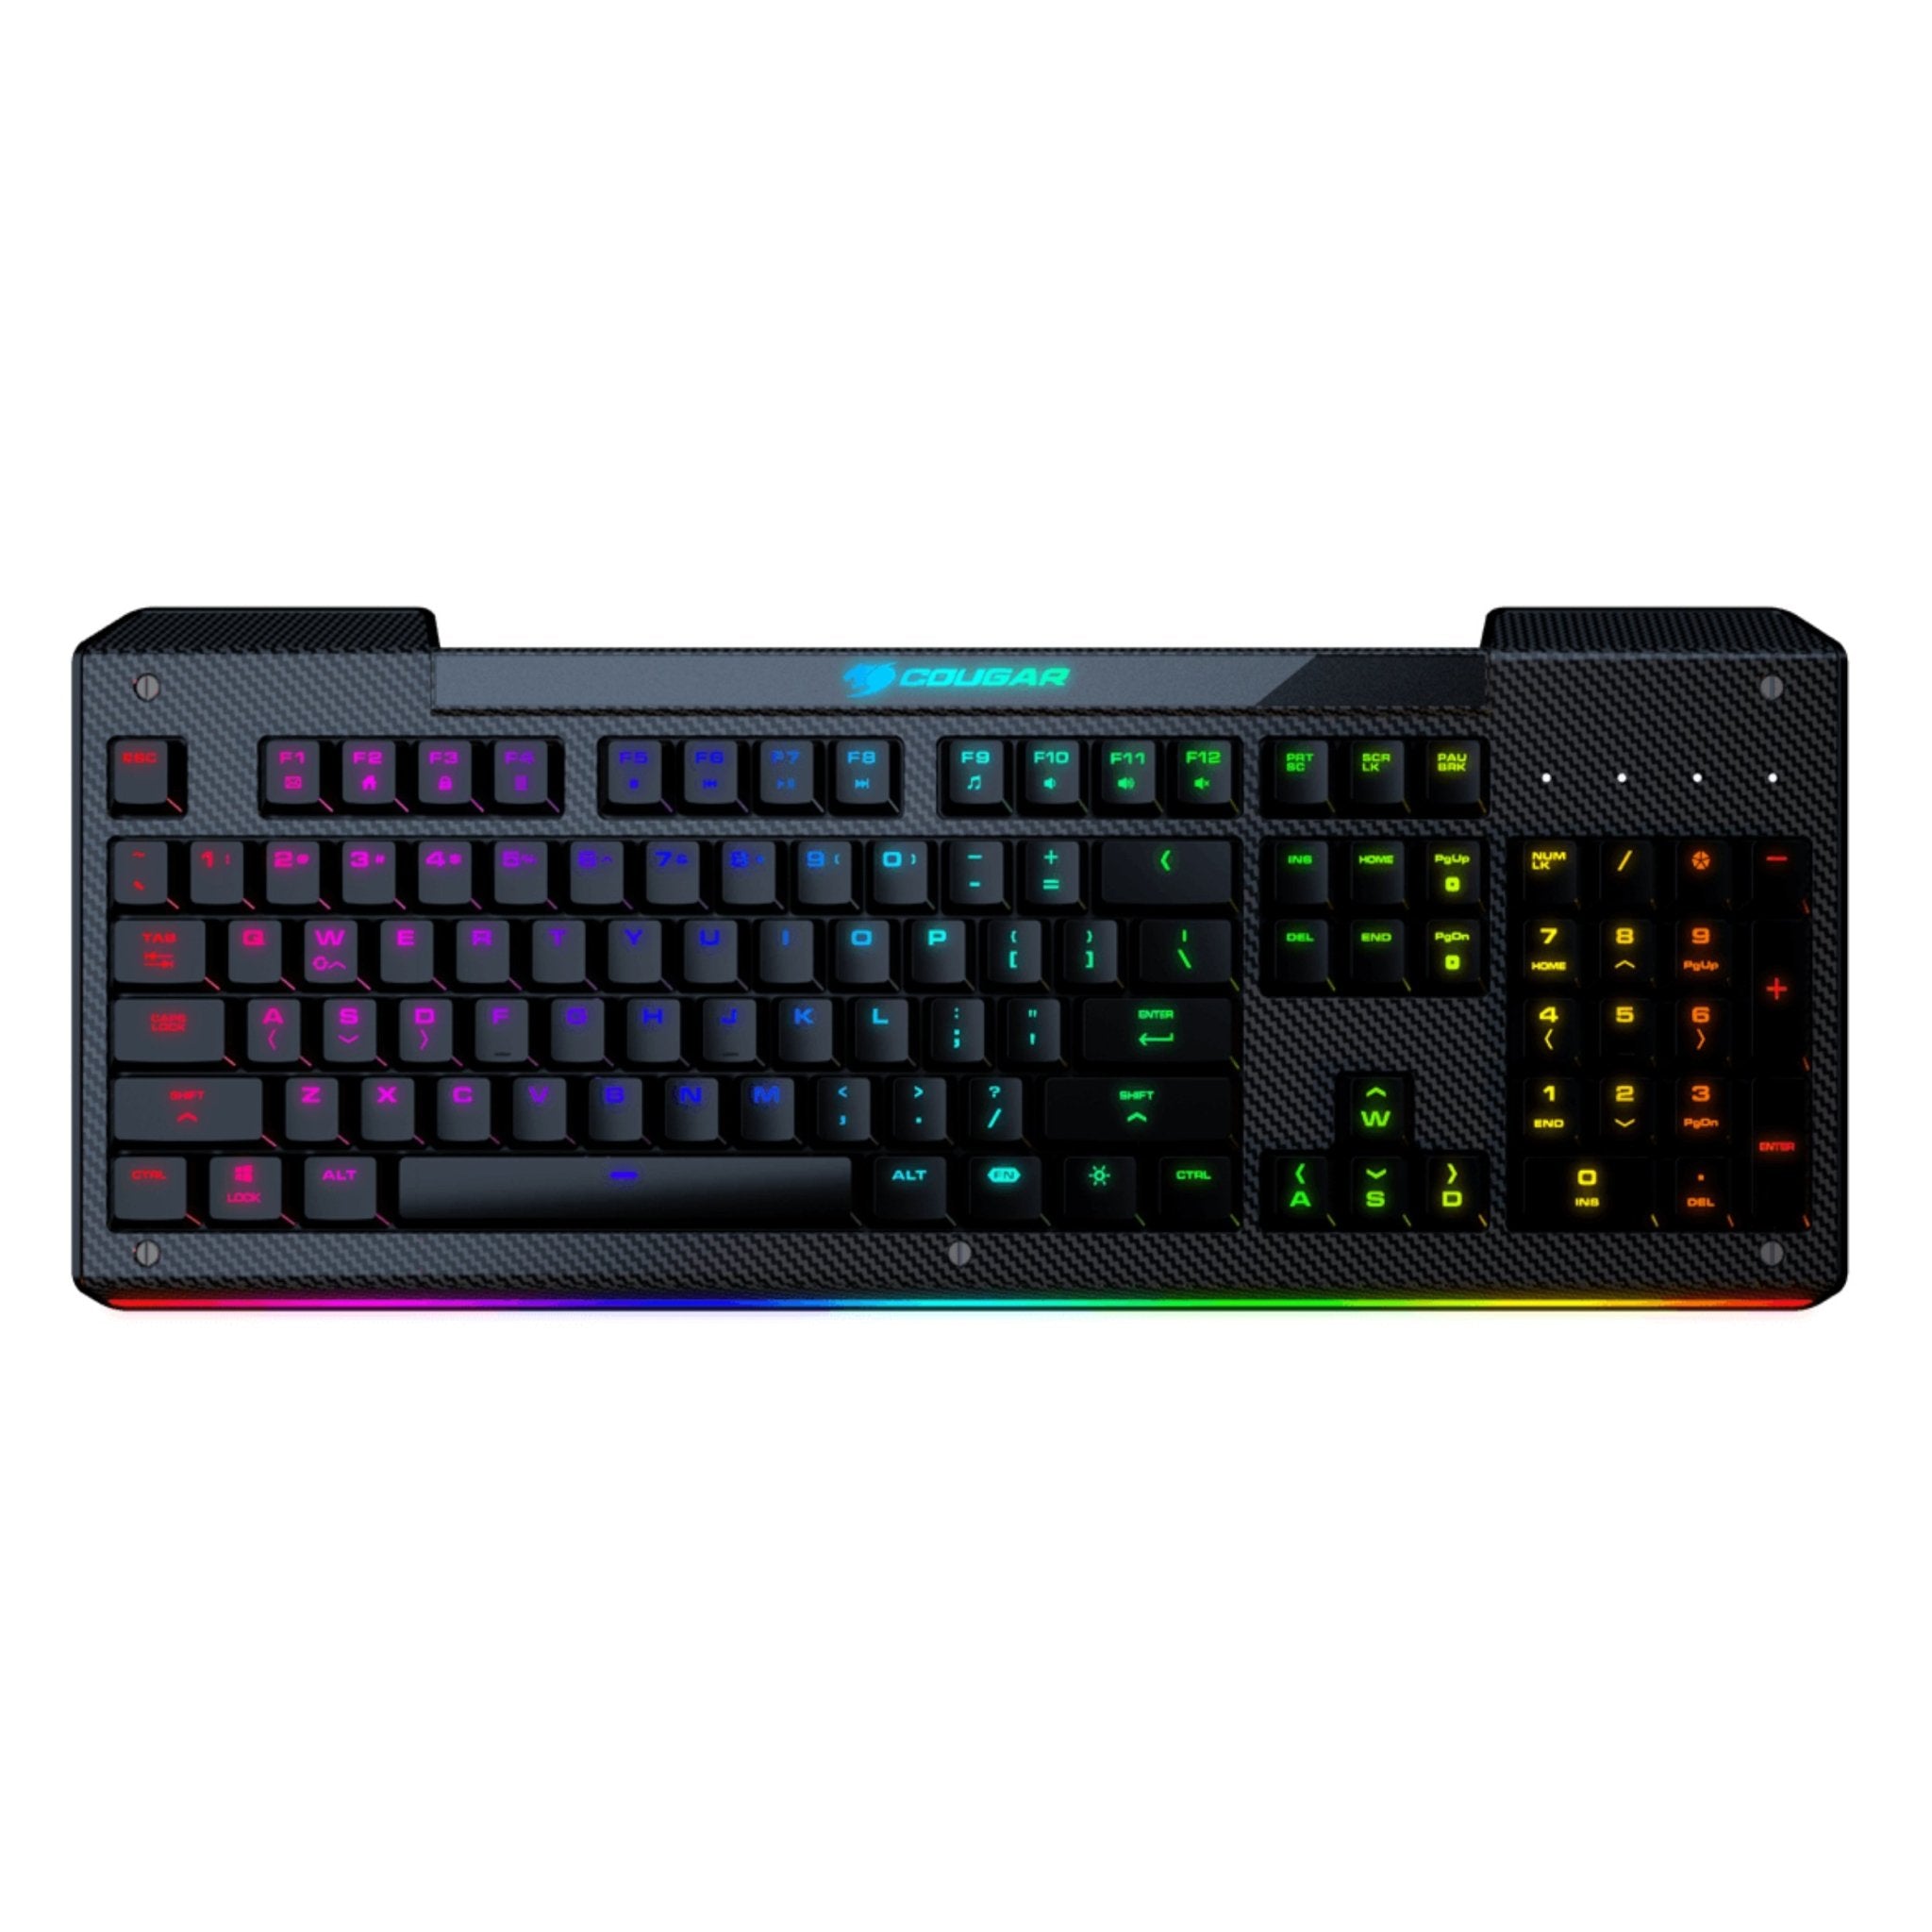 Cougar Aurora S Gaming RGB Keyboard - Black - Store 974 | ستور ٩٧٤